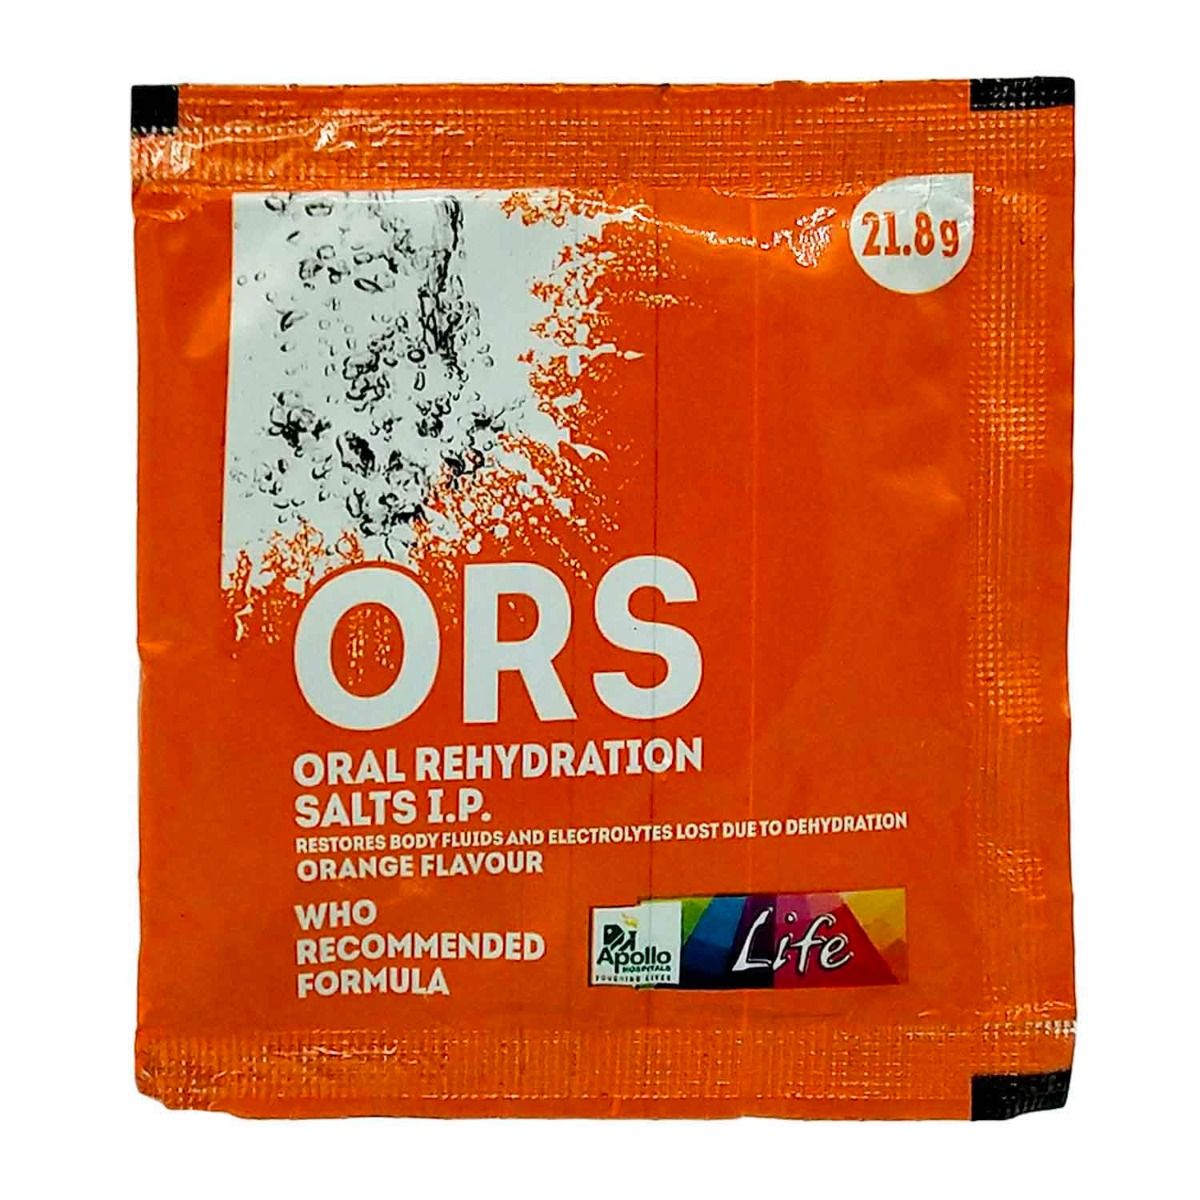 Buy Apollo Pharmacy ORS Orange Flavour Powder, 21.8 gm Online